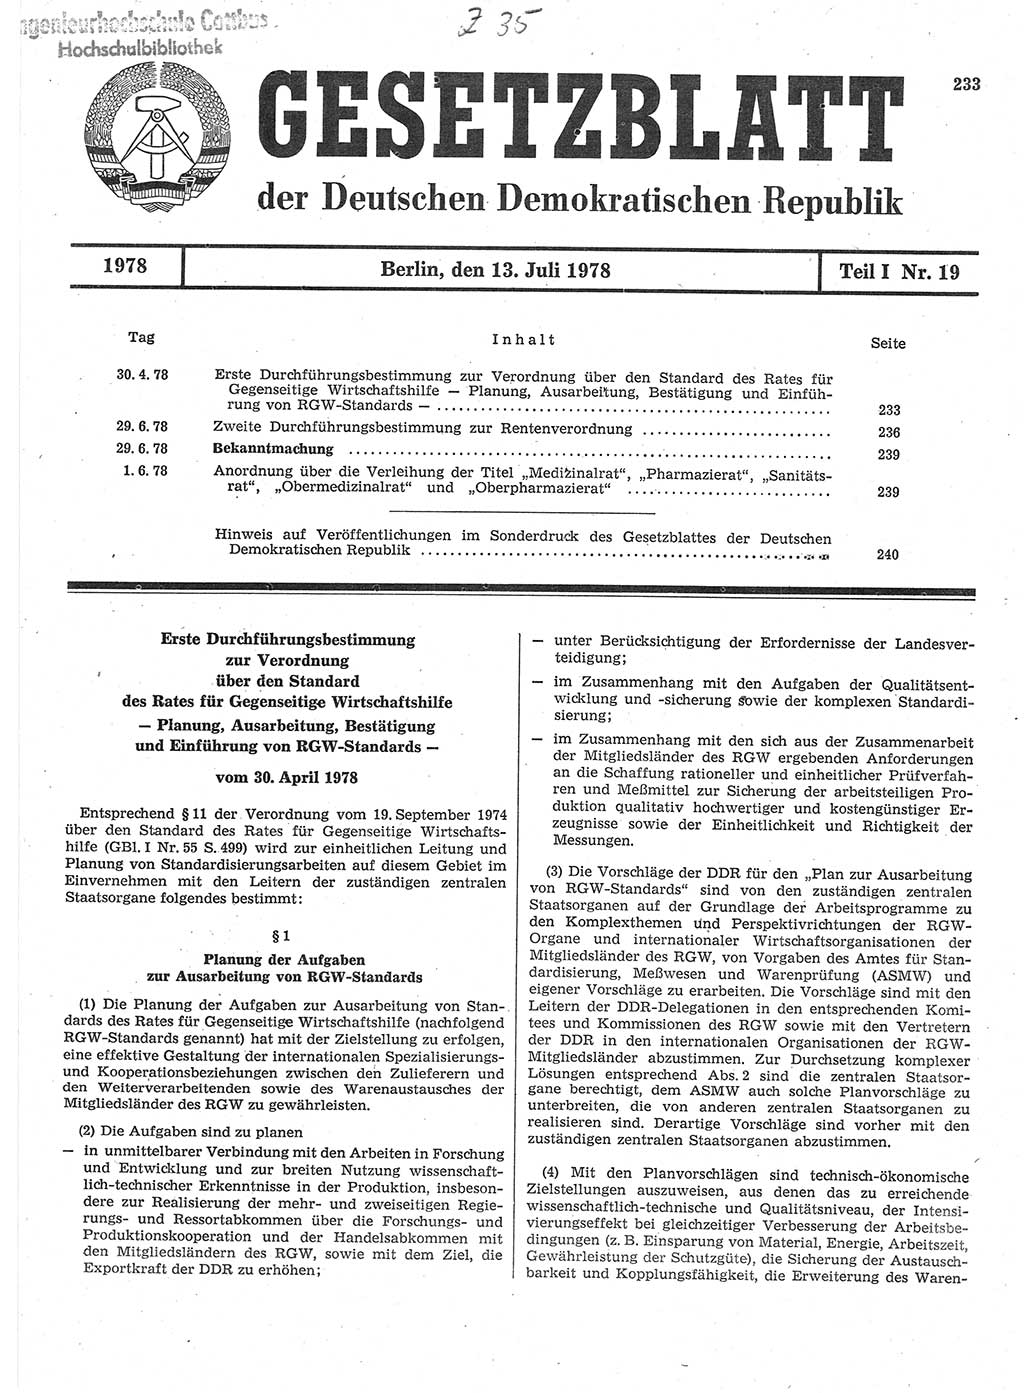 Gesetzblatt (GBl.) der Deutschen Demokratischen Republik (DDR) Teil Ⅰ 1978, Seite 233 (GBl. DDR Ⅰ 1978, S. 233)